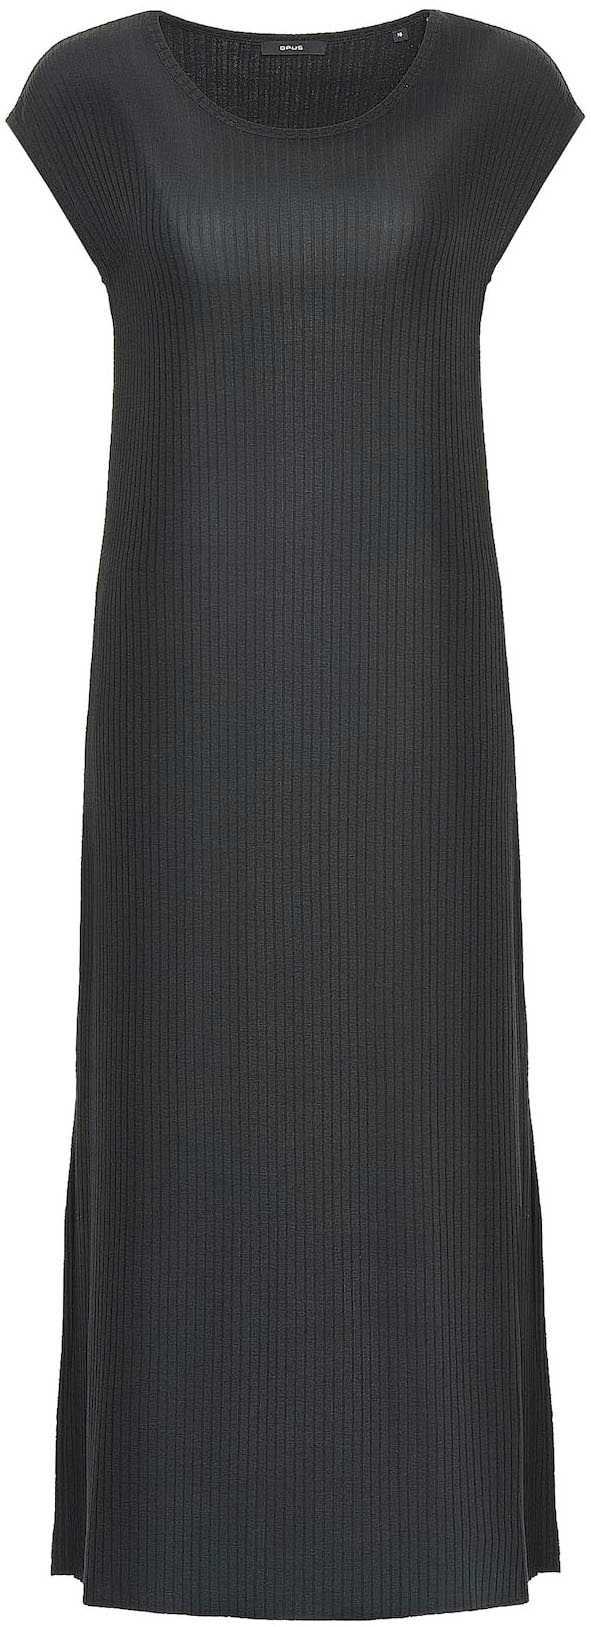 OPUS Jerseykleid »Winston«, mit strukturiertem Griff kaufen